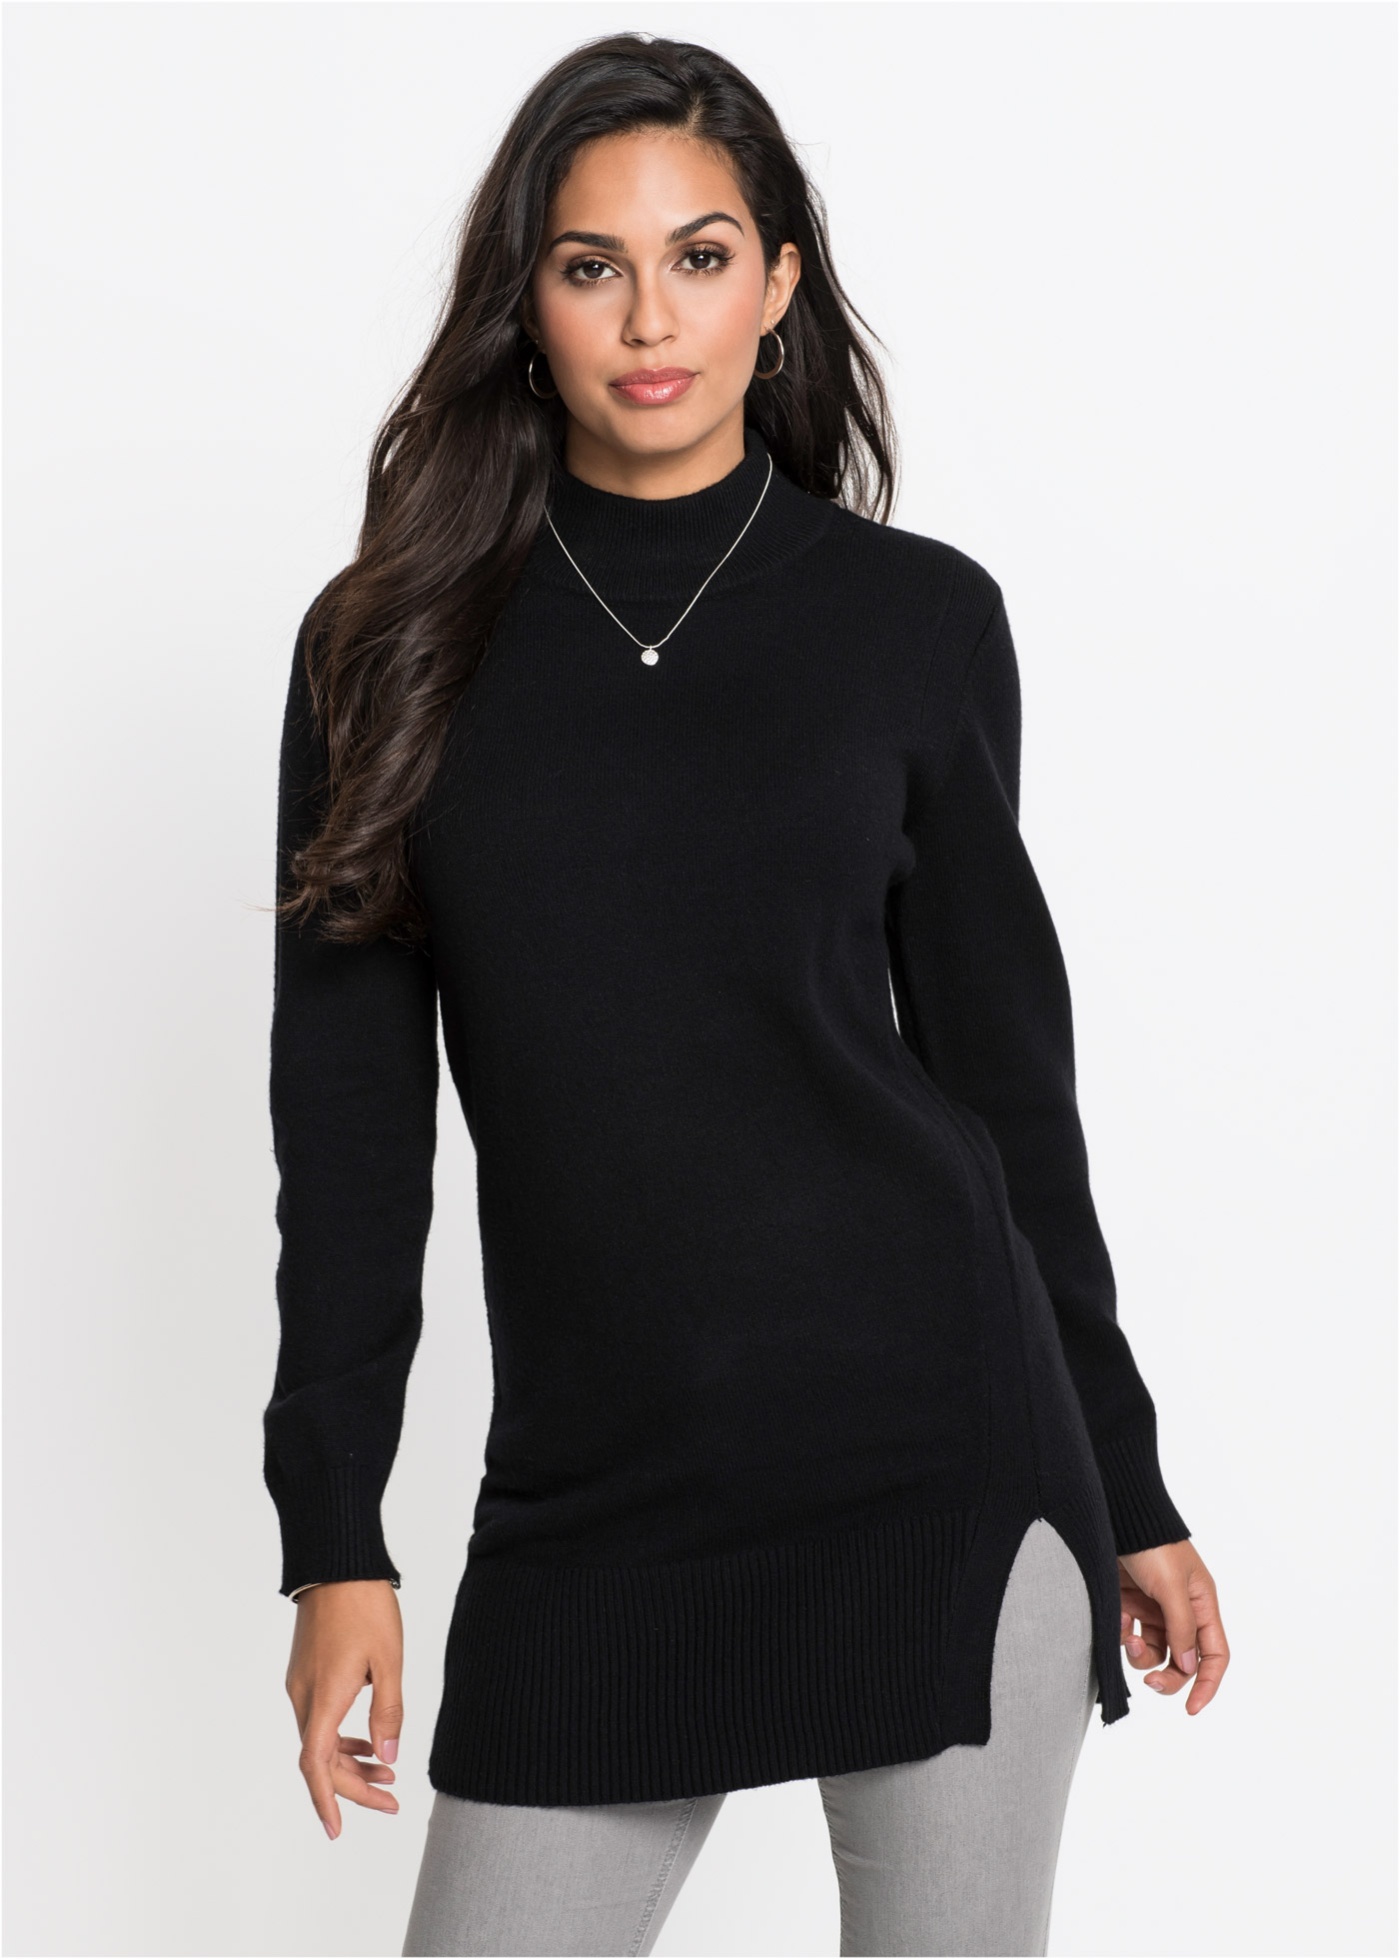 Черный свитер женский